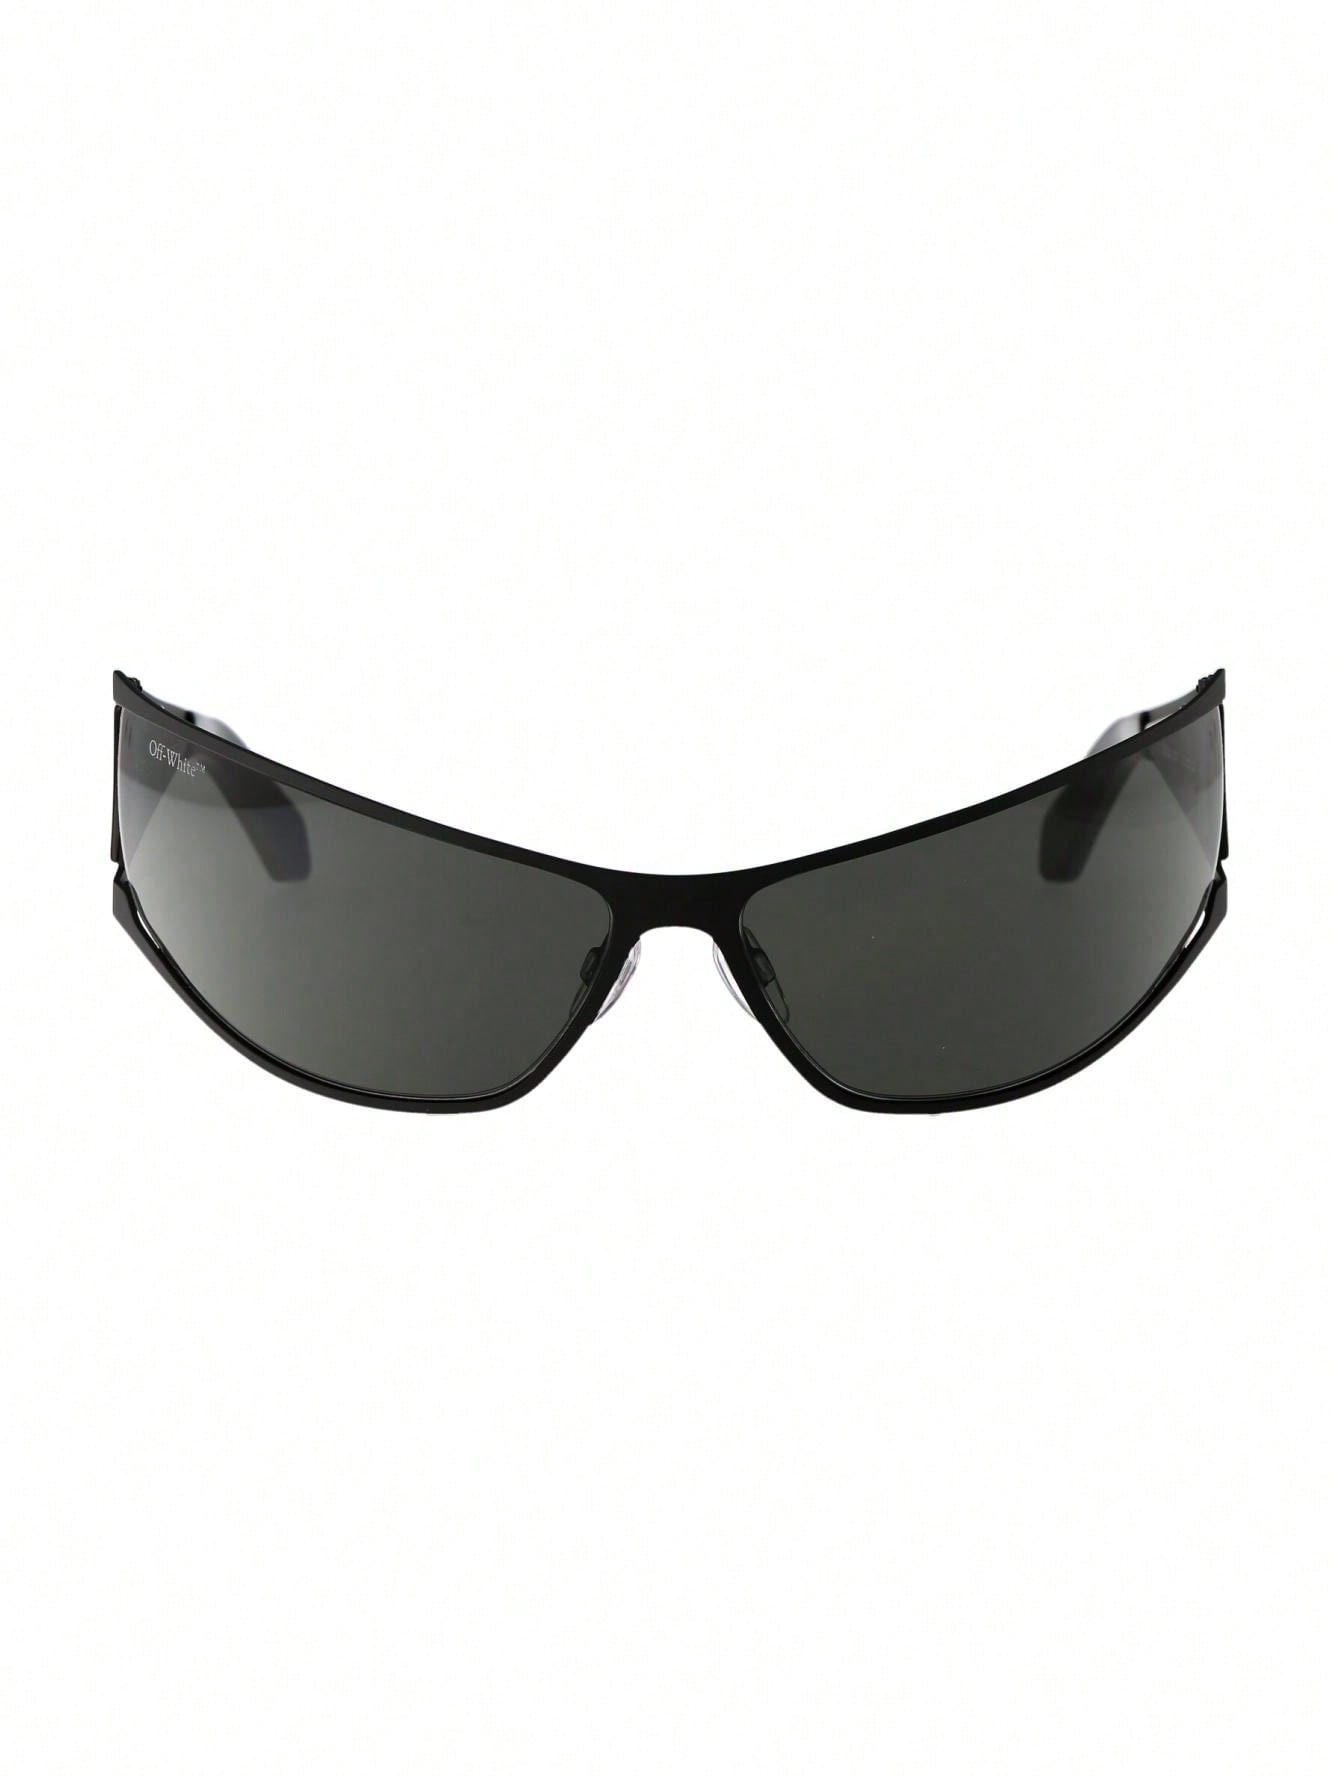 черные солнцезащитные очки на клипсе off white цвет black dark grey Мужские солнцезащитные очки Off-White ЧЕРНЫЕ OERI102F23MET0011007, черный